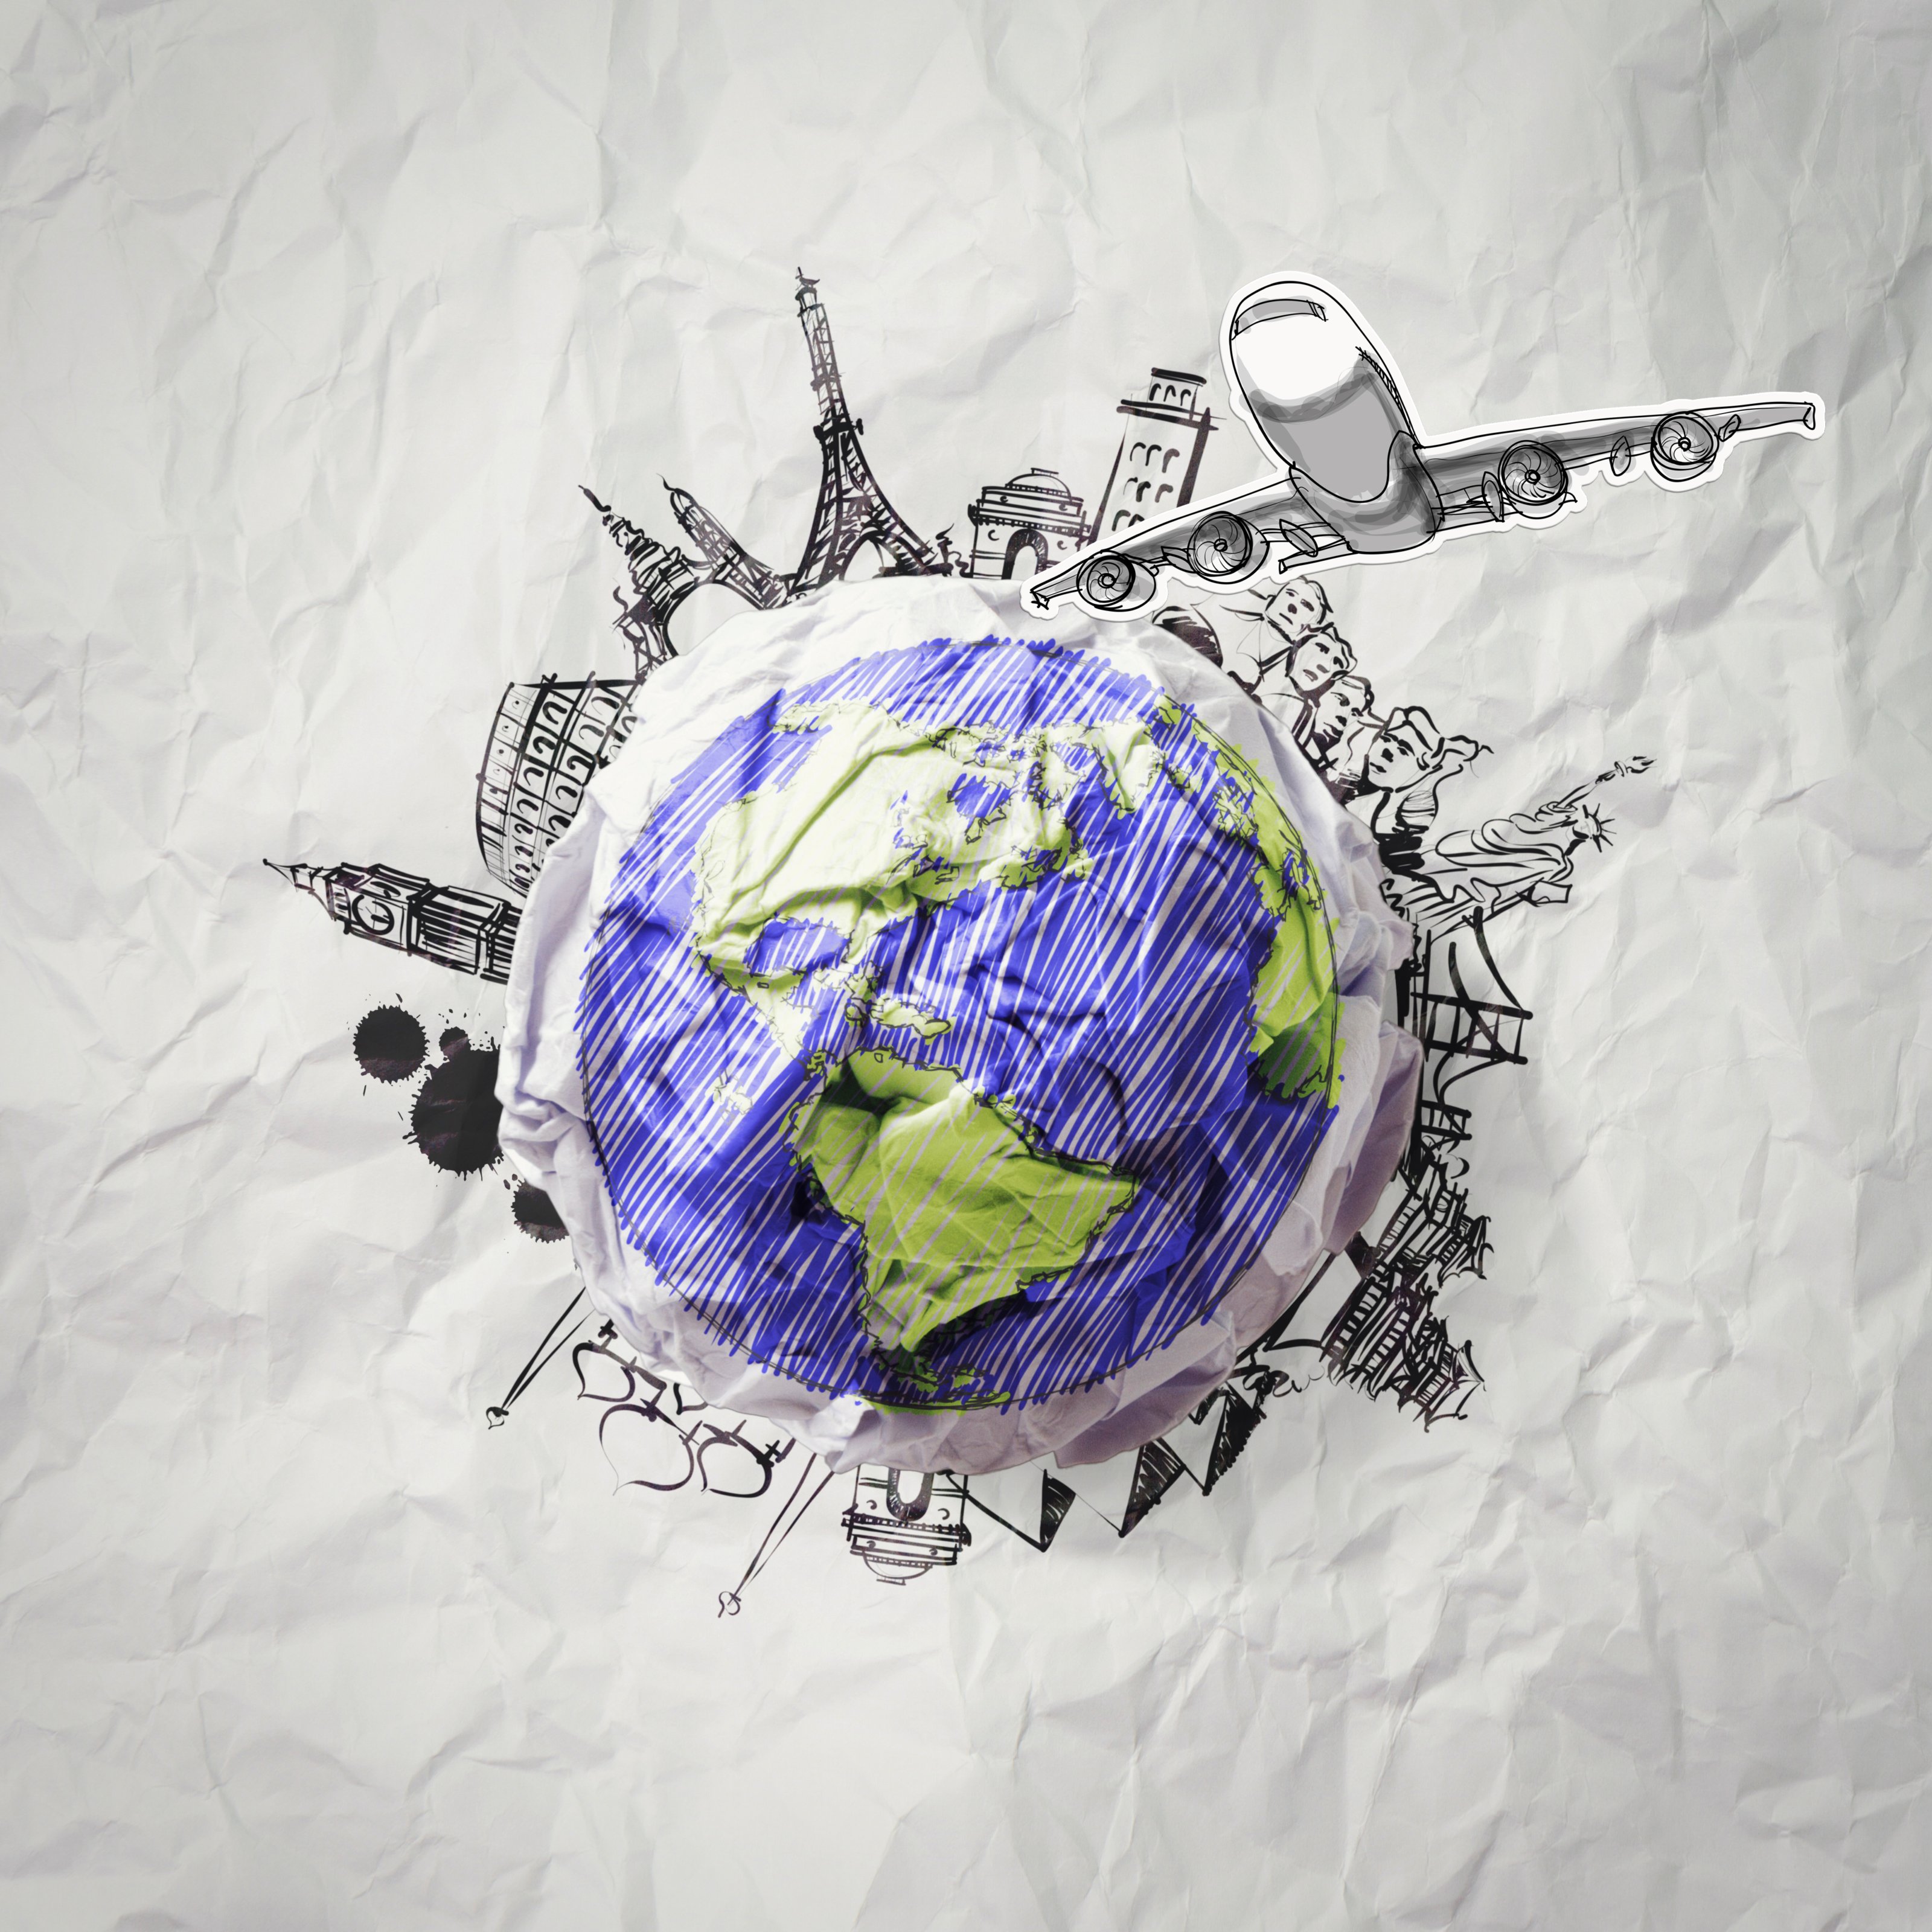 auf Papier gezeichnete Weltkugel mit internationalen Wahrzeichen kreisförmig darum